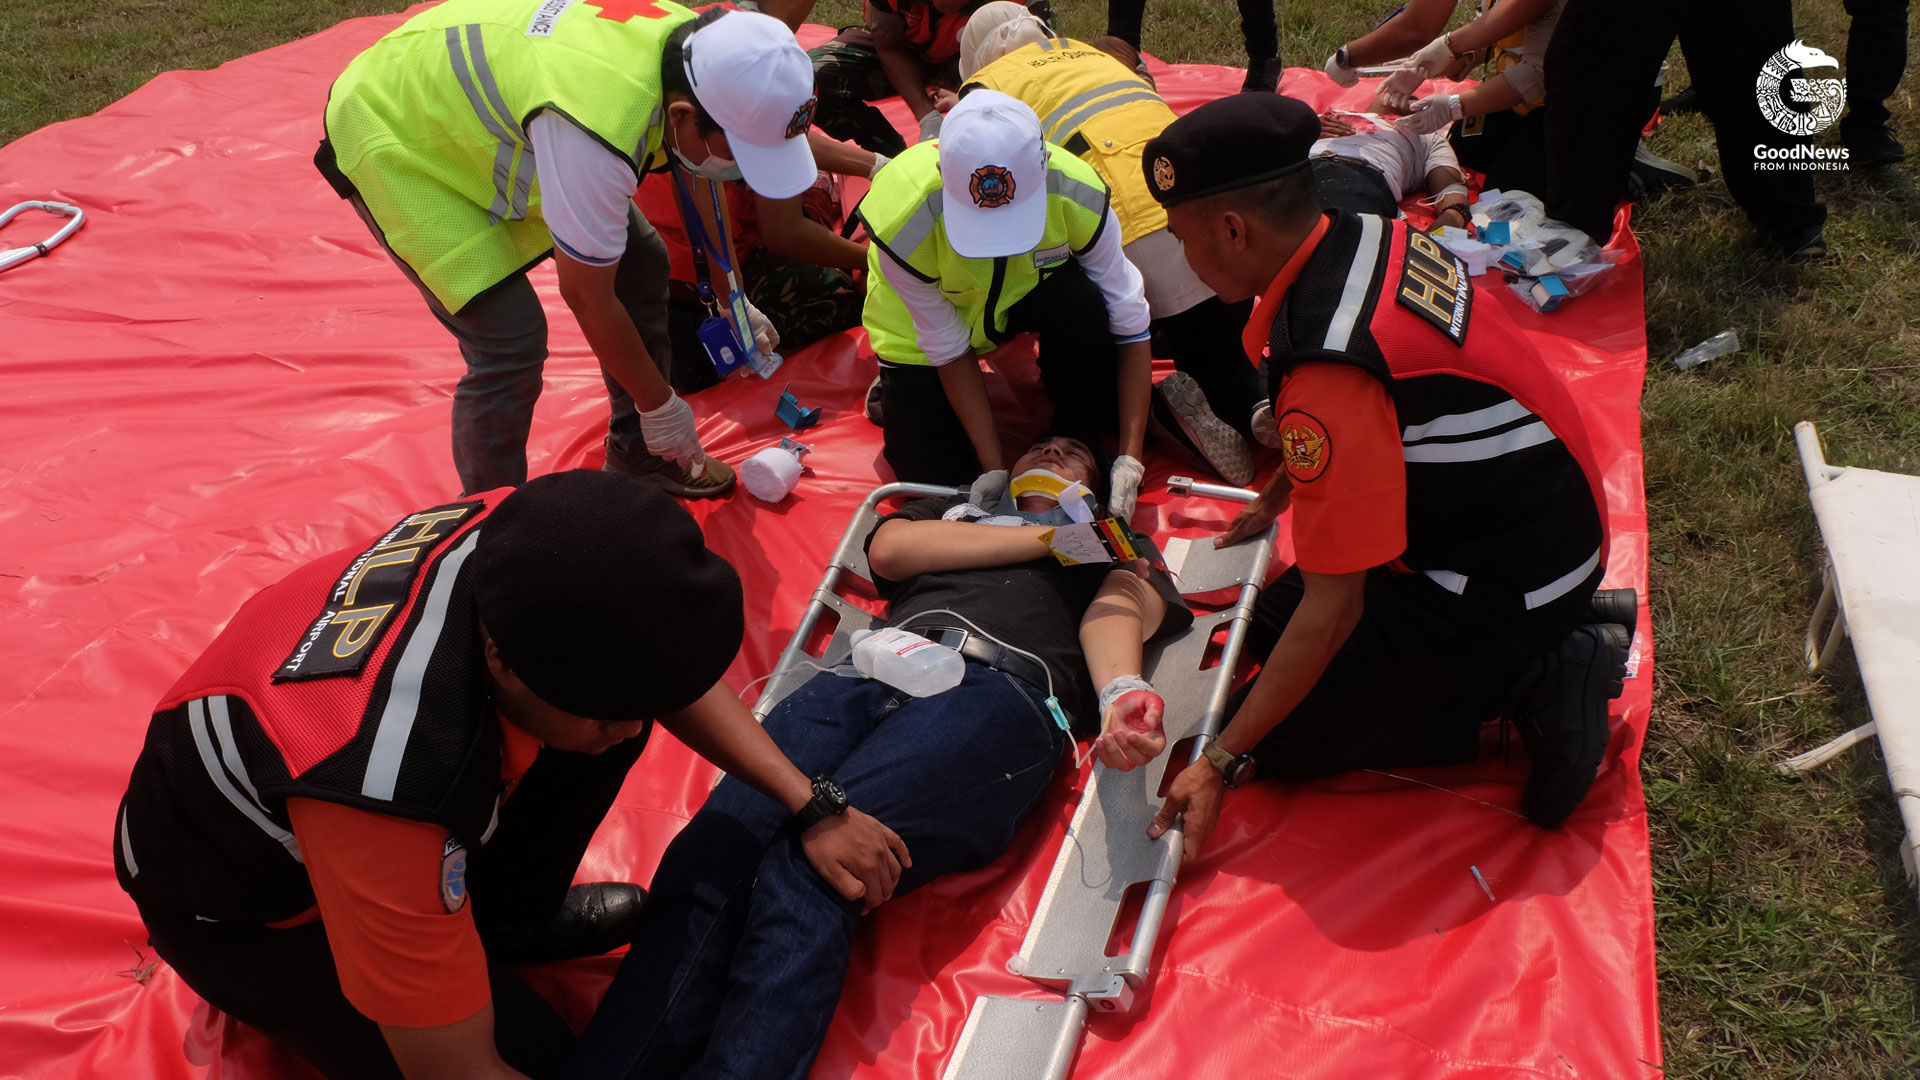 Semua peralatan medis tersedia lengkap untuk menolong korban | Foto: Aditya Jaya/GNFI